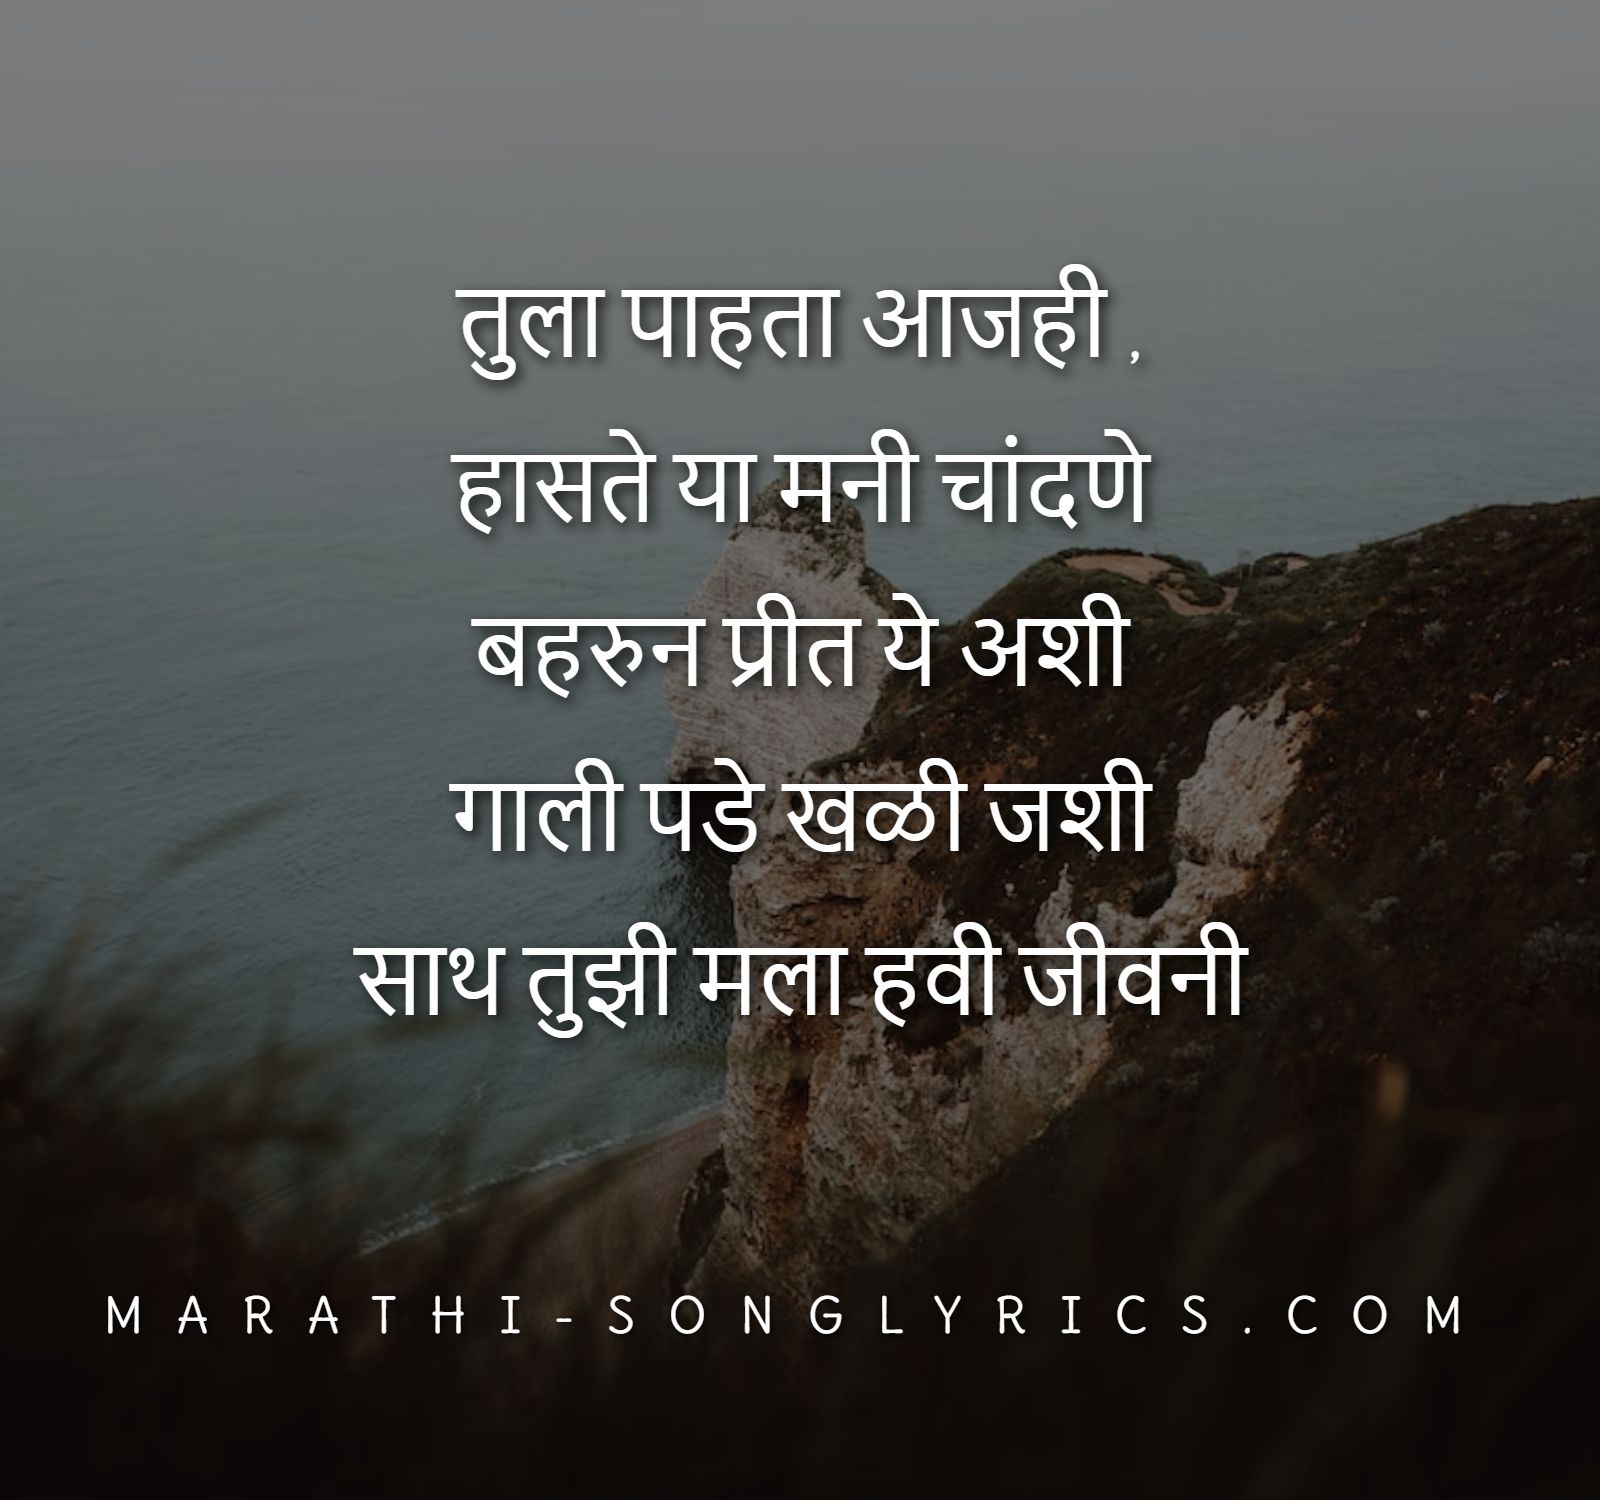 Tula Pahata Lyrics in Marathi